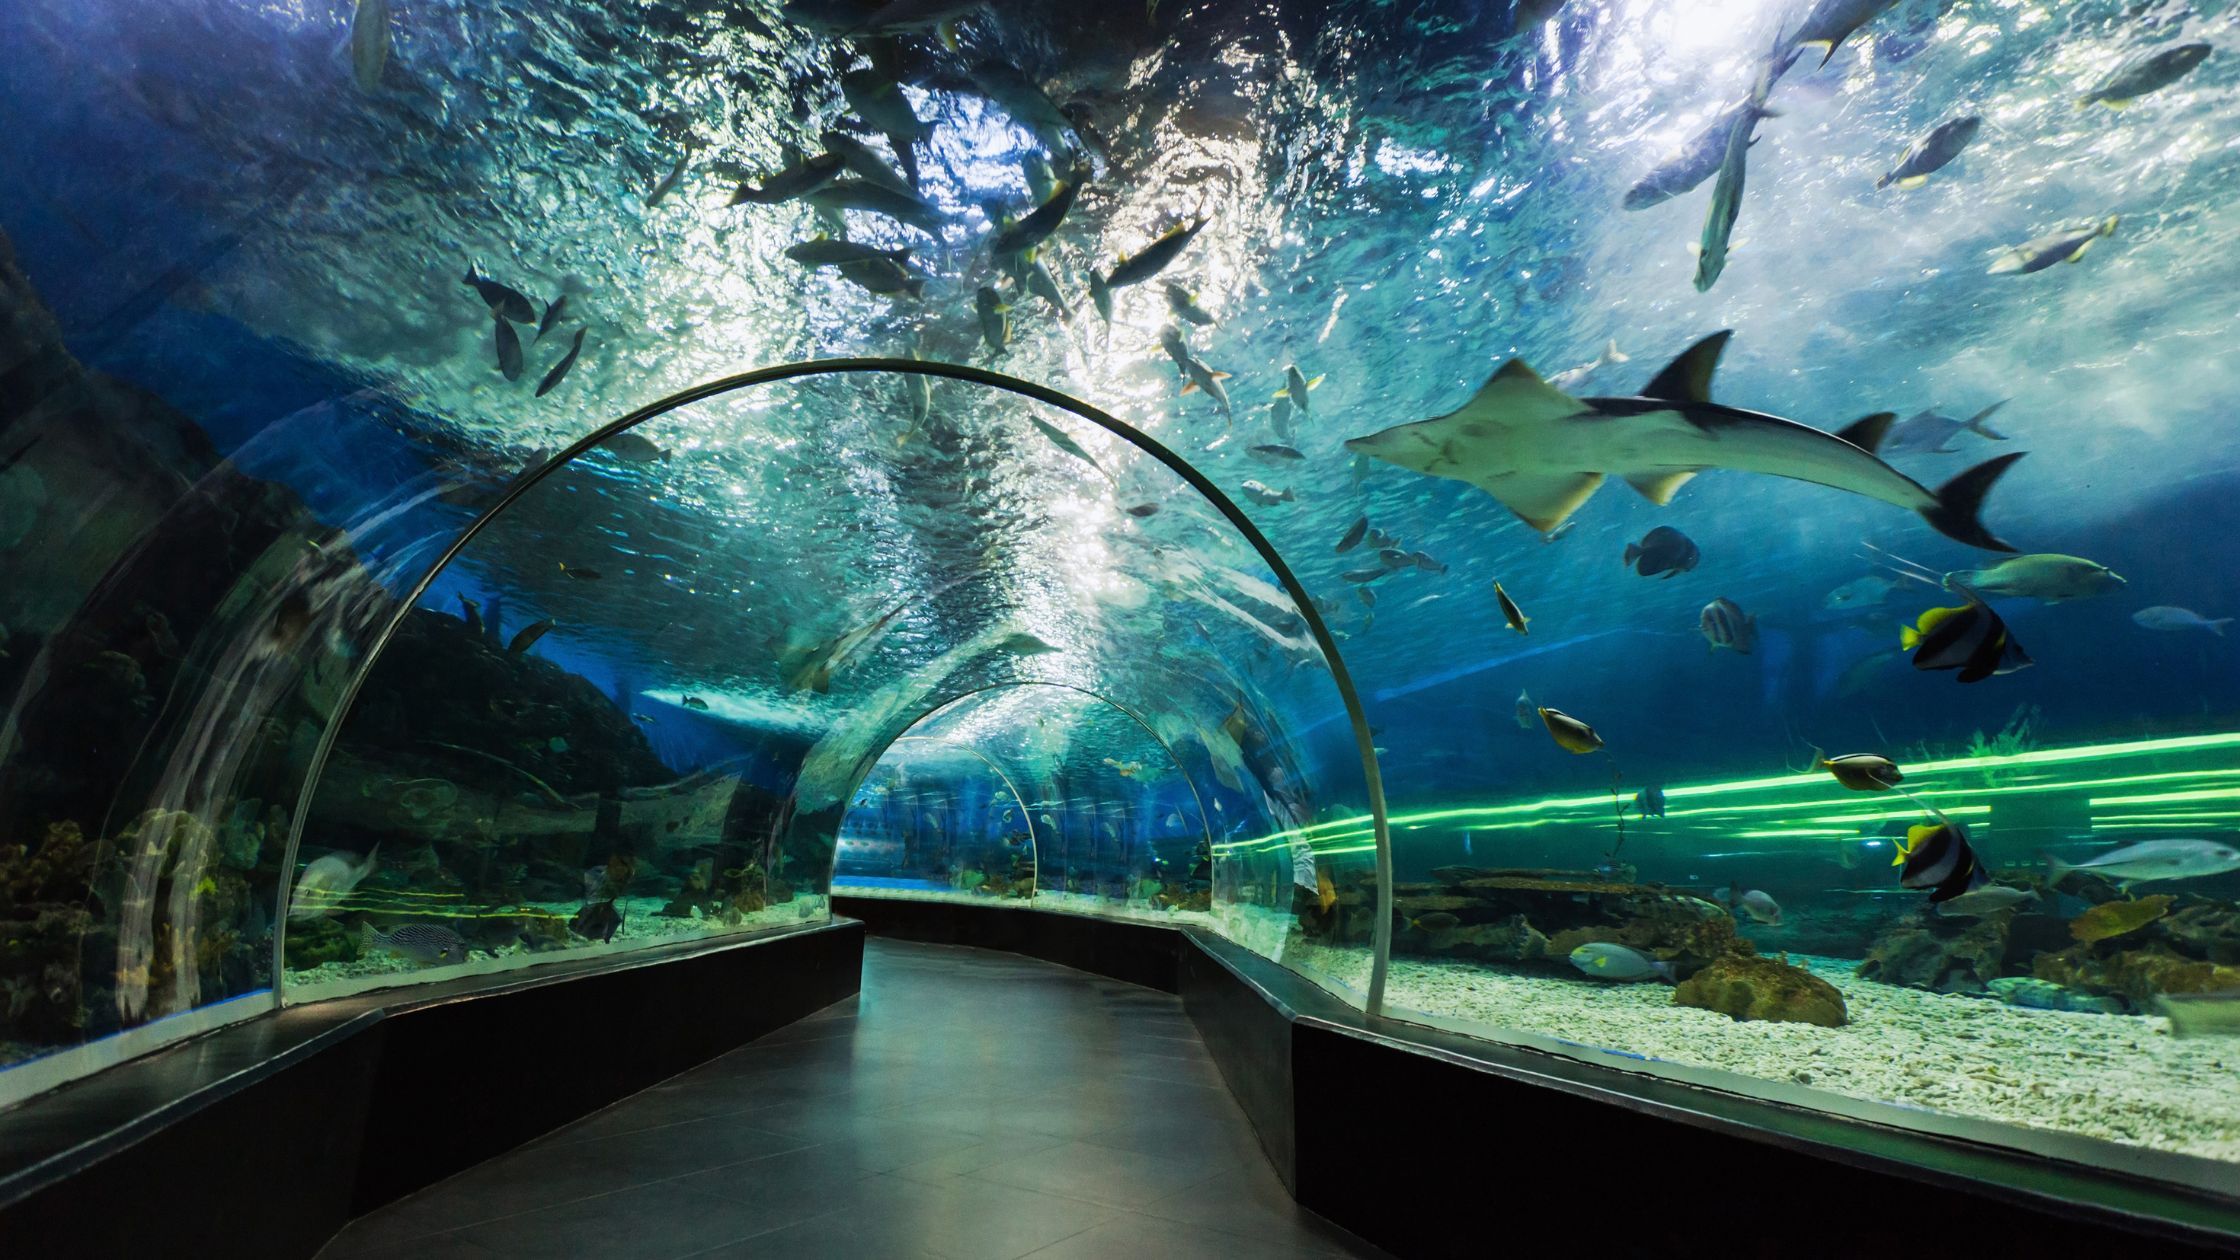 Dubai Aquarium tunnel and The Underwater Zoo tour